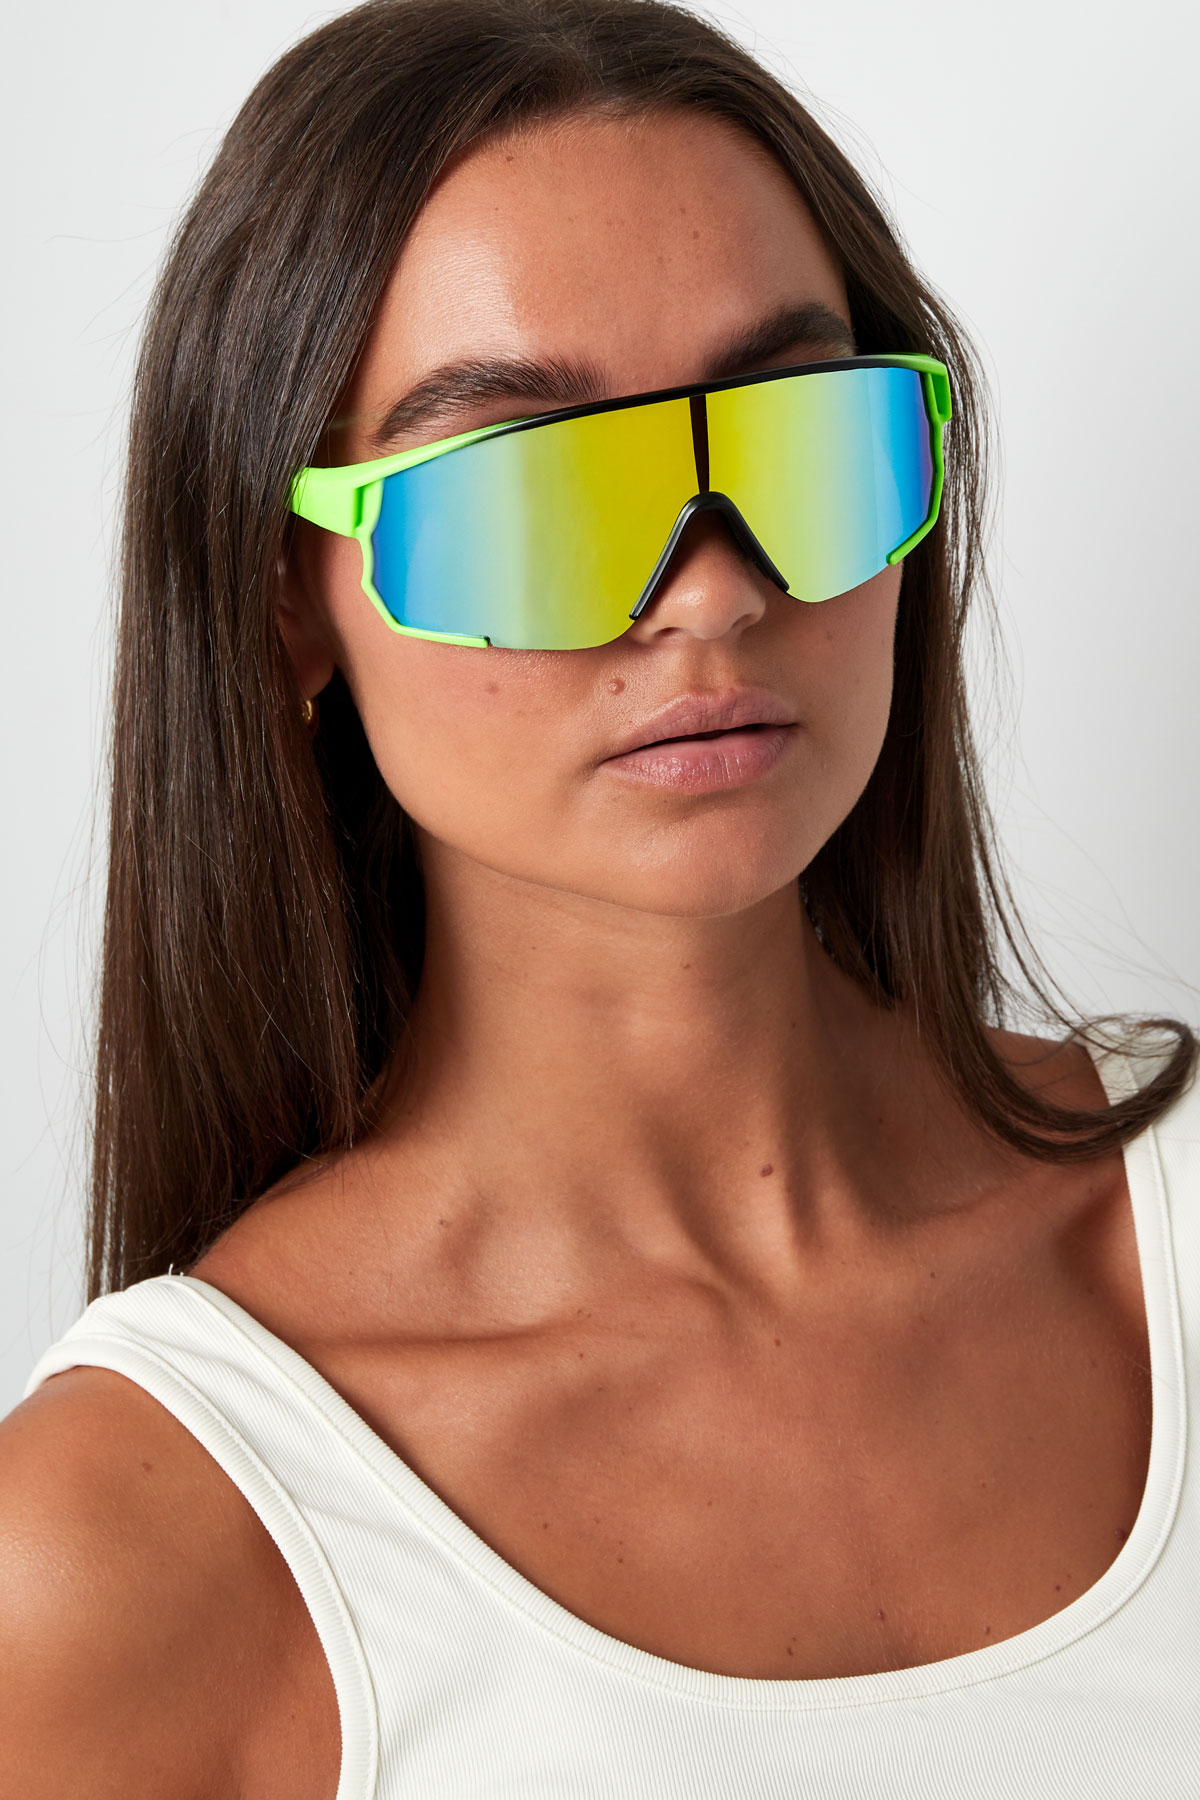 Güneş gözlüğü renkli lensler - siyah/mavi h5 Resim5